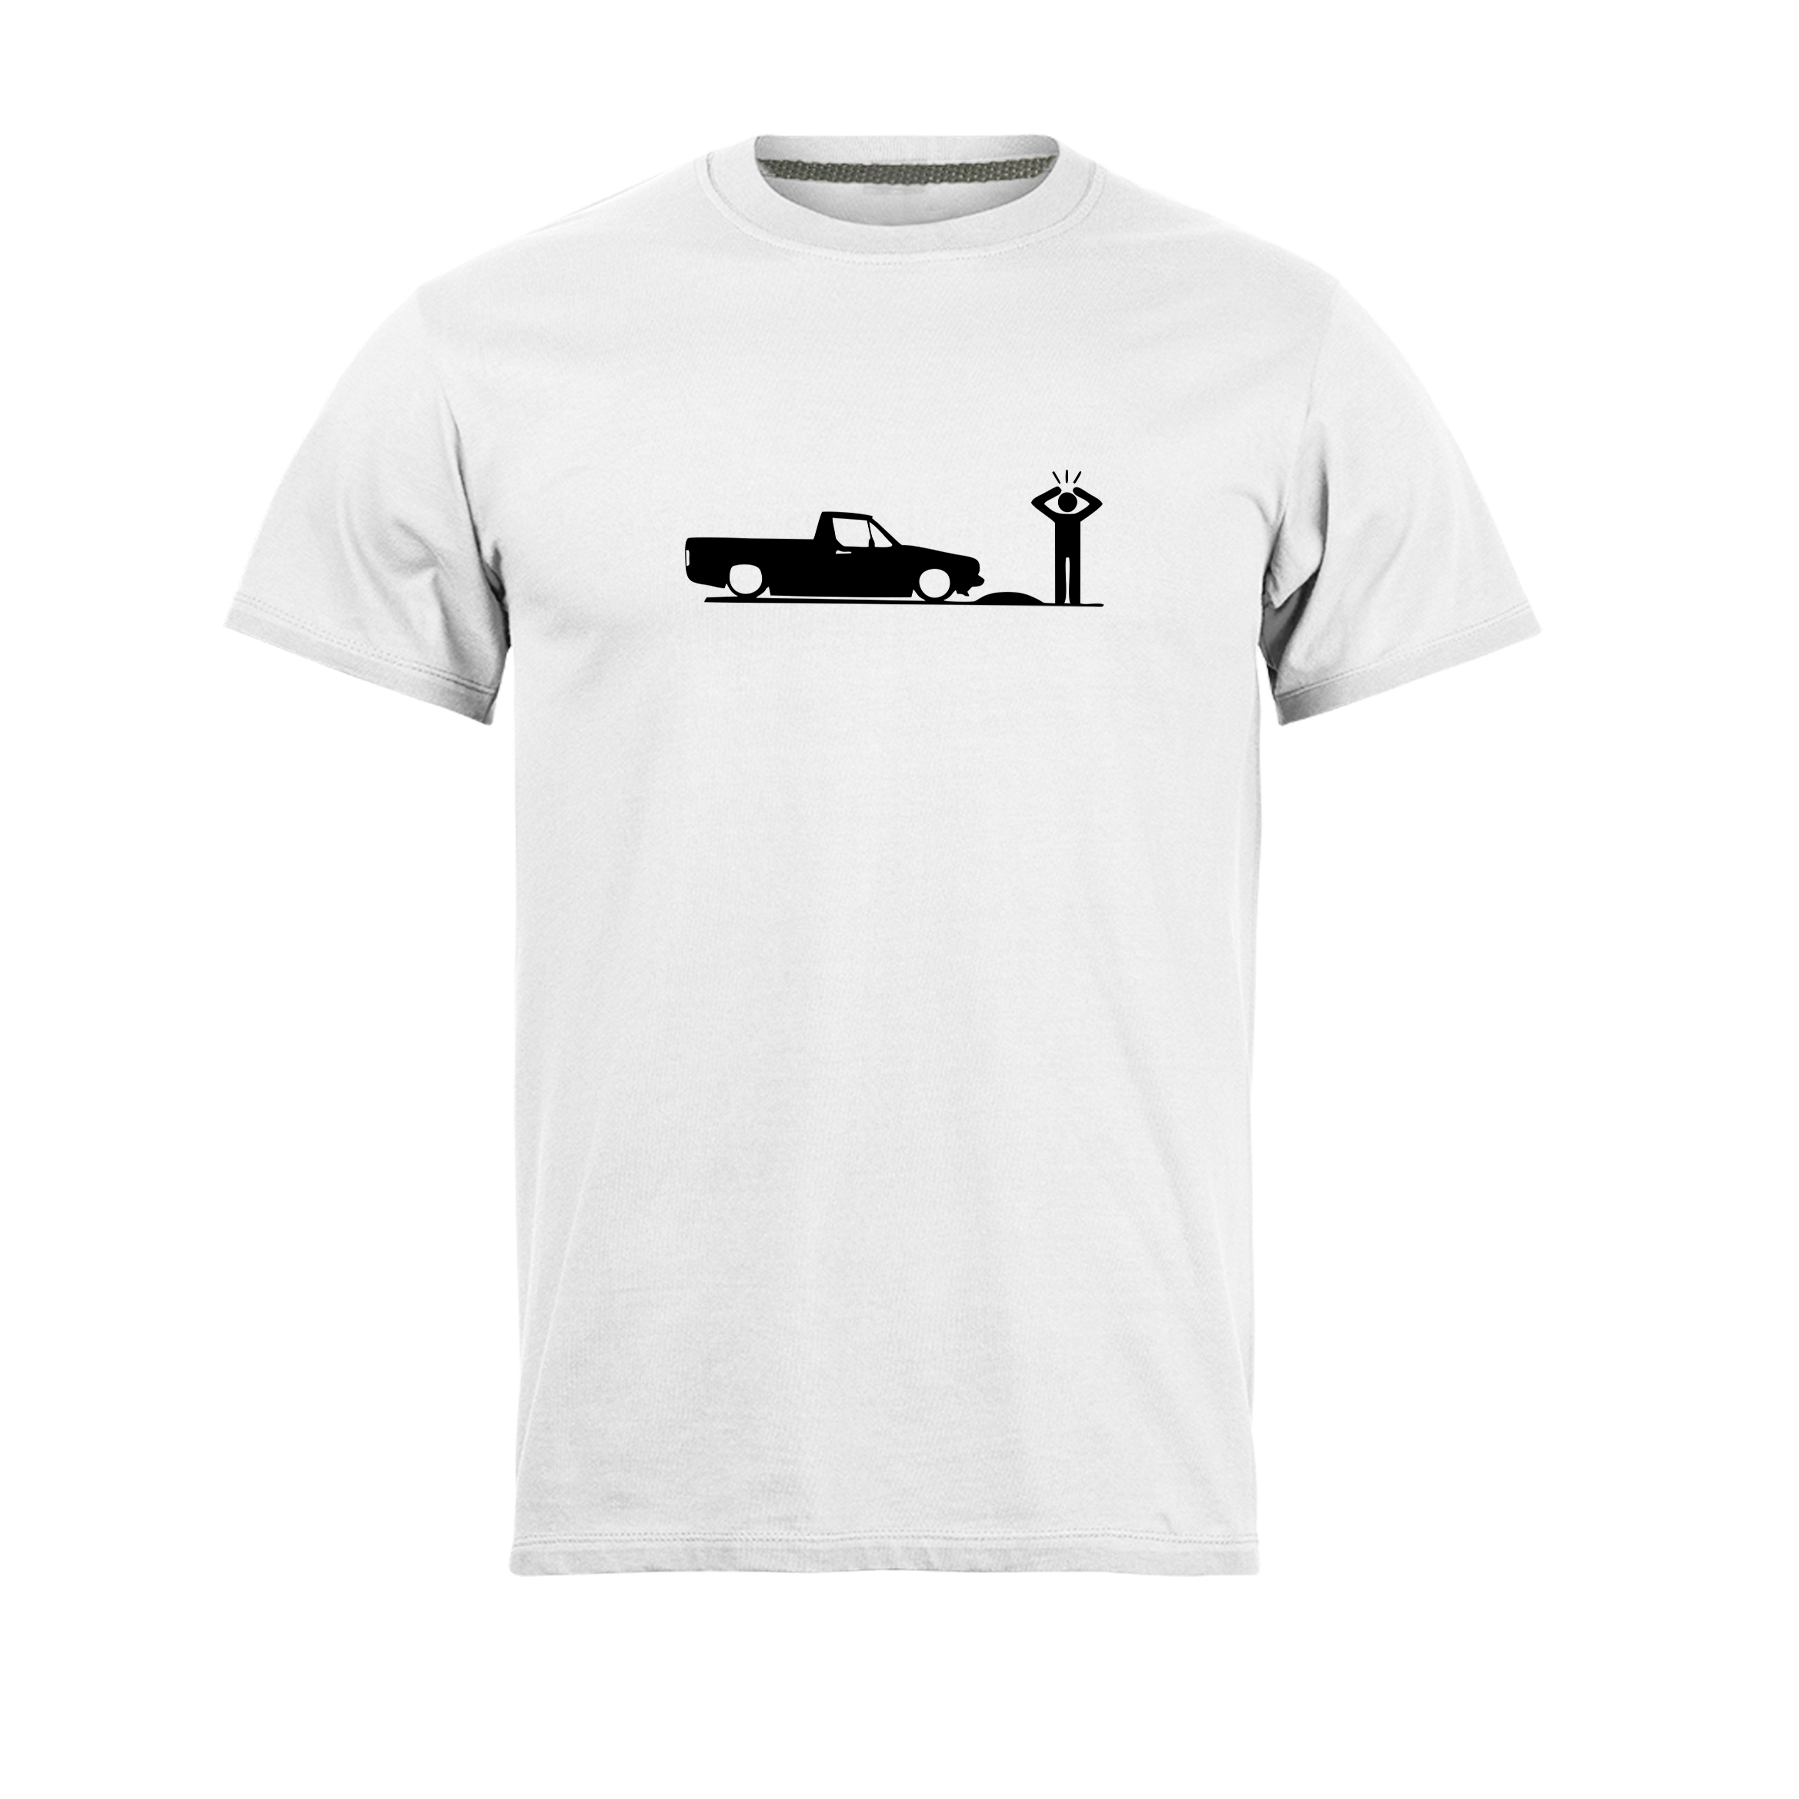 تی شرت آستین کوتاه مردانه مدل ماشین کف خواب کد N1_0155 رنگ سفید